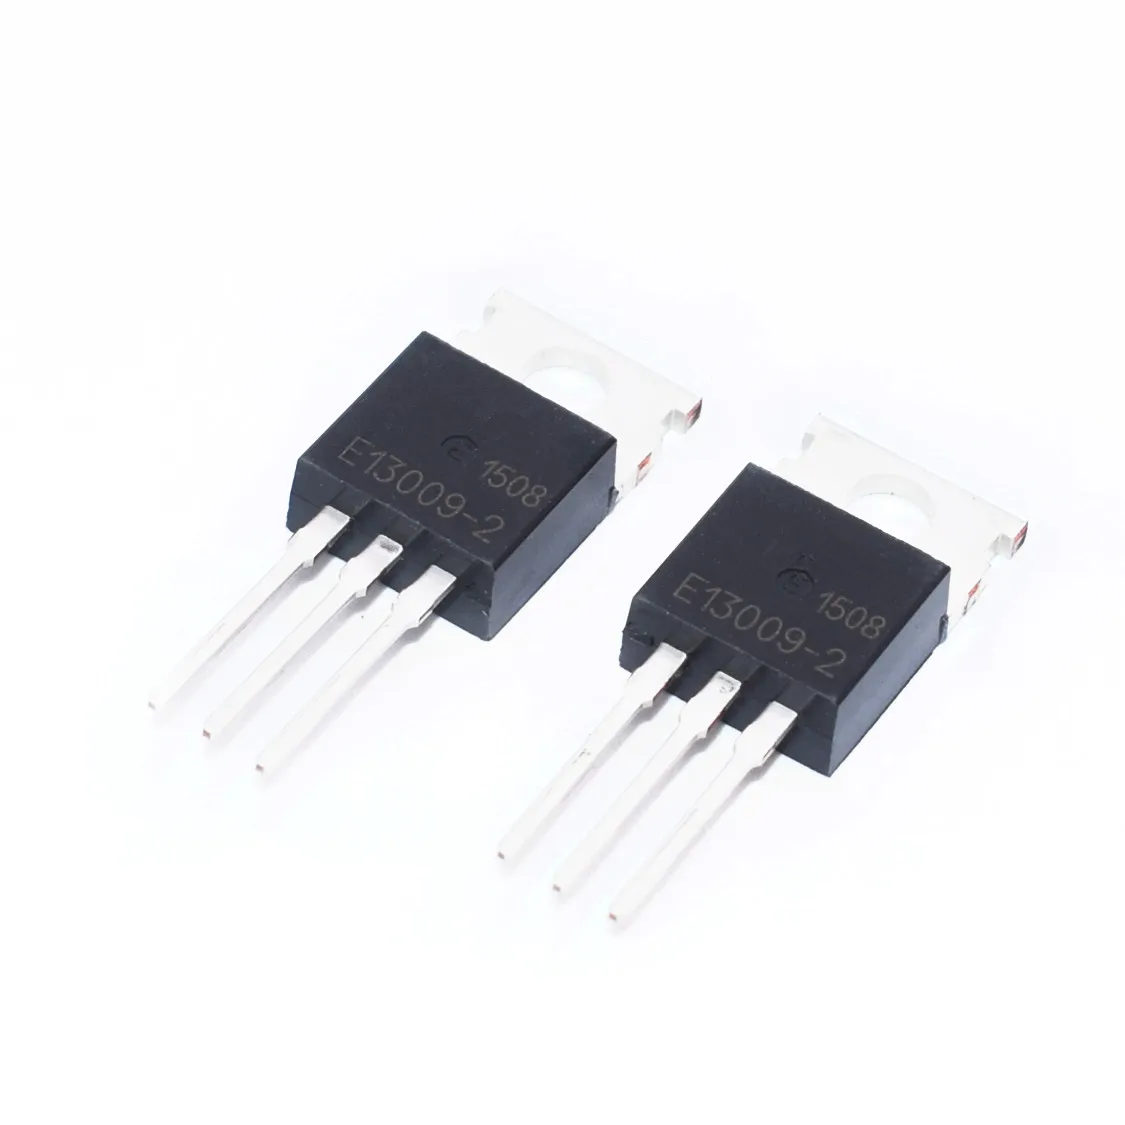 Фото 10 шт. высоковольтный транзистор NPN MJE13009 E13009 MJE13009-2 E13009-2 TO-220 с быстрым